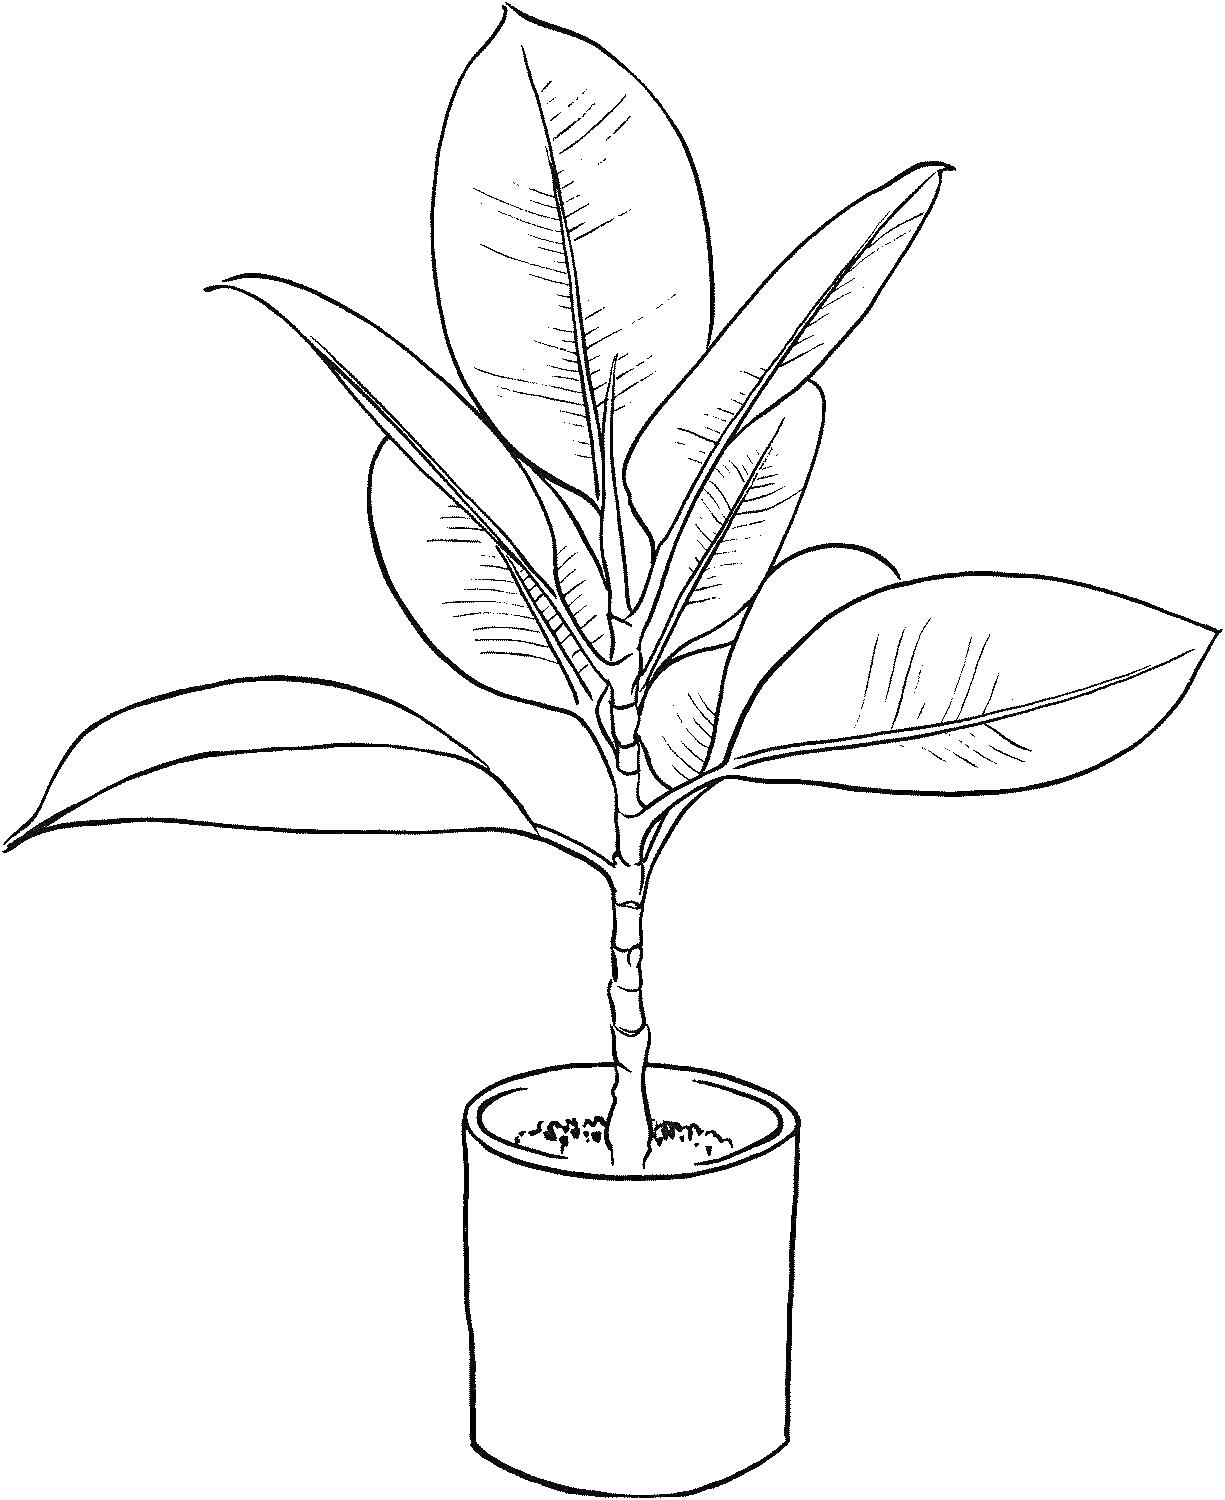 Раскраска Комнатное растение в горшке с большими овальными листьями